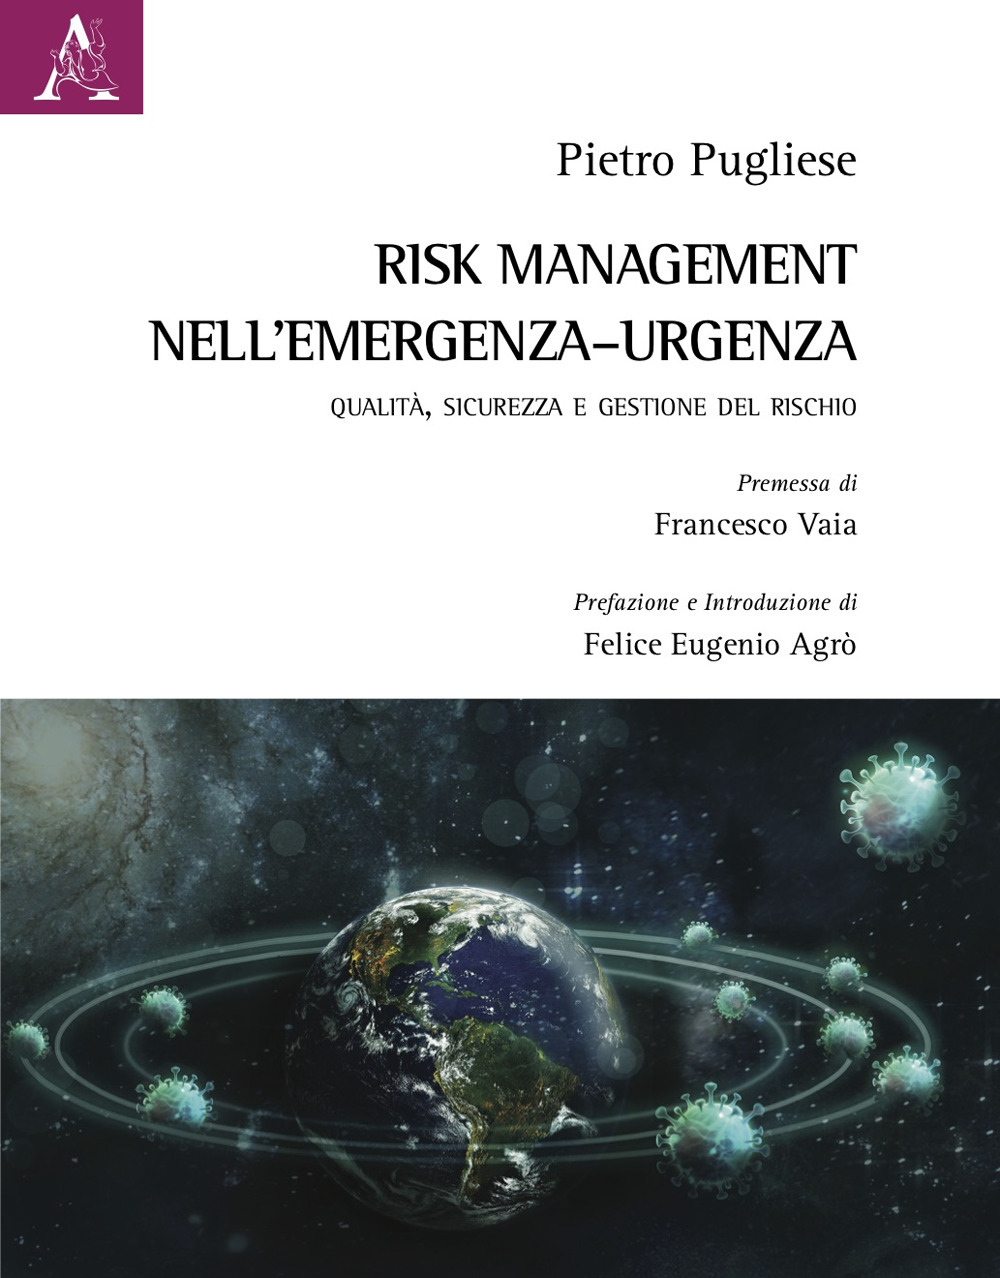 Risk Management nell'emergenza-urgenza. Qualità, sicurezza e gestione del rischio